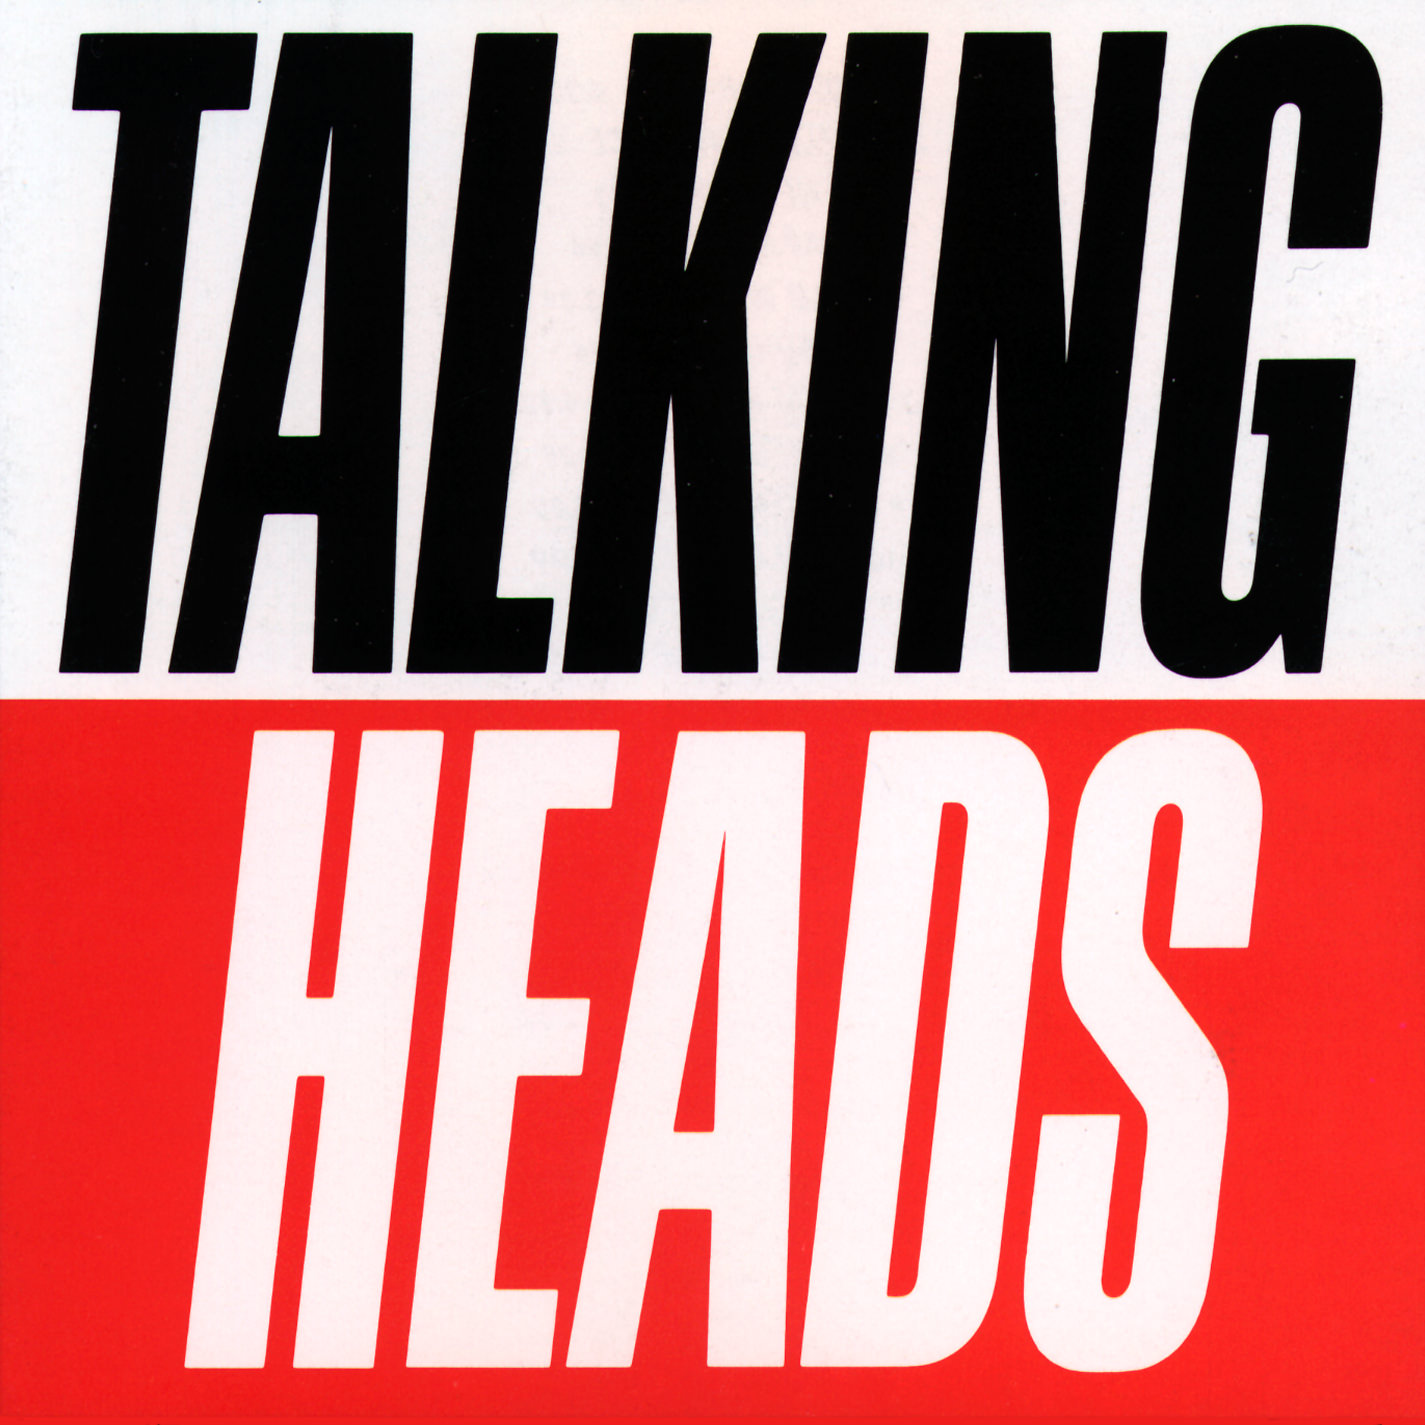 Talking Heads - True Stories (1986/2011) [HDTracks FLAC 24bit/96kHz]